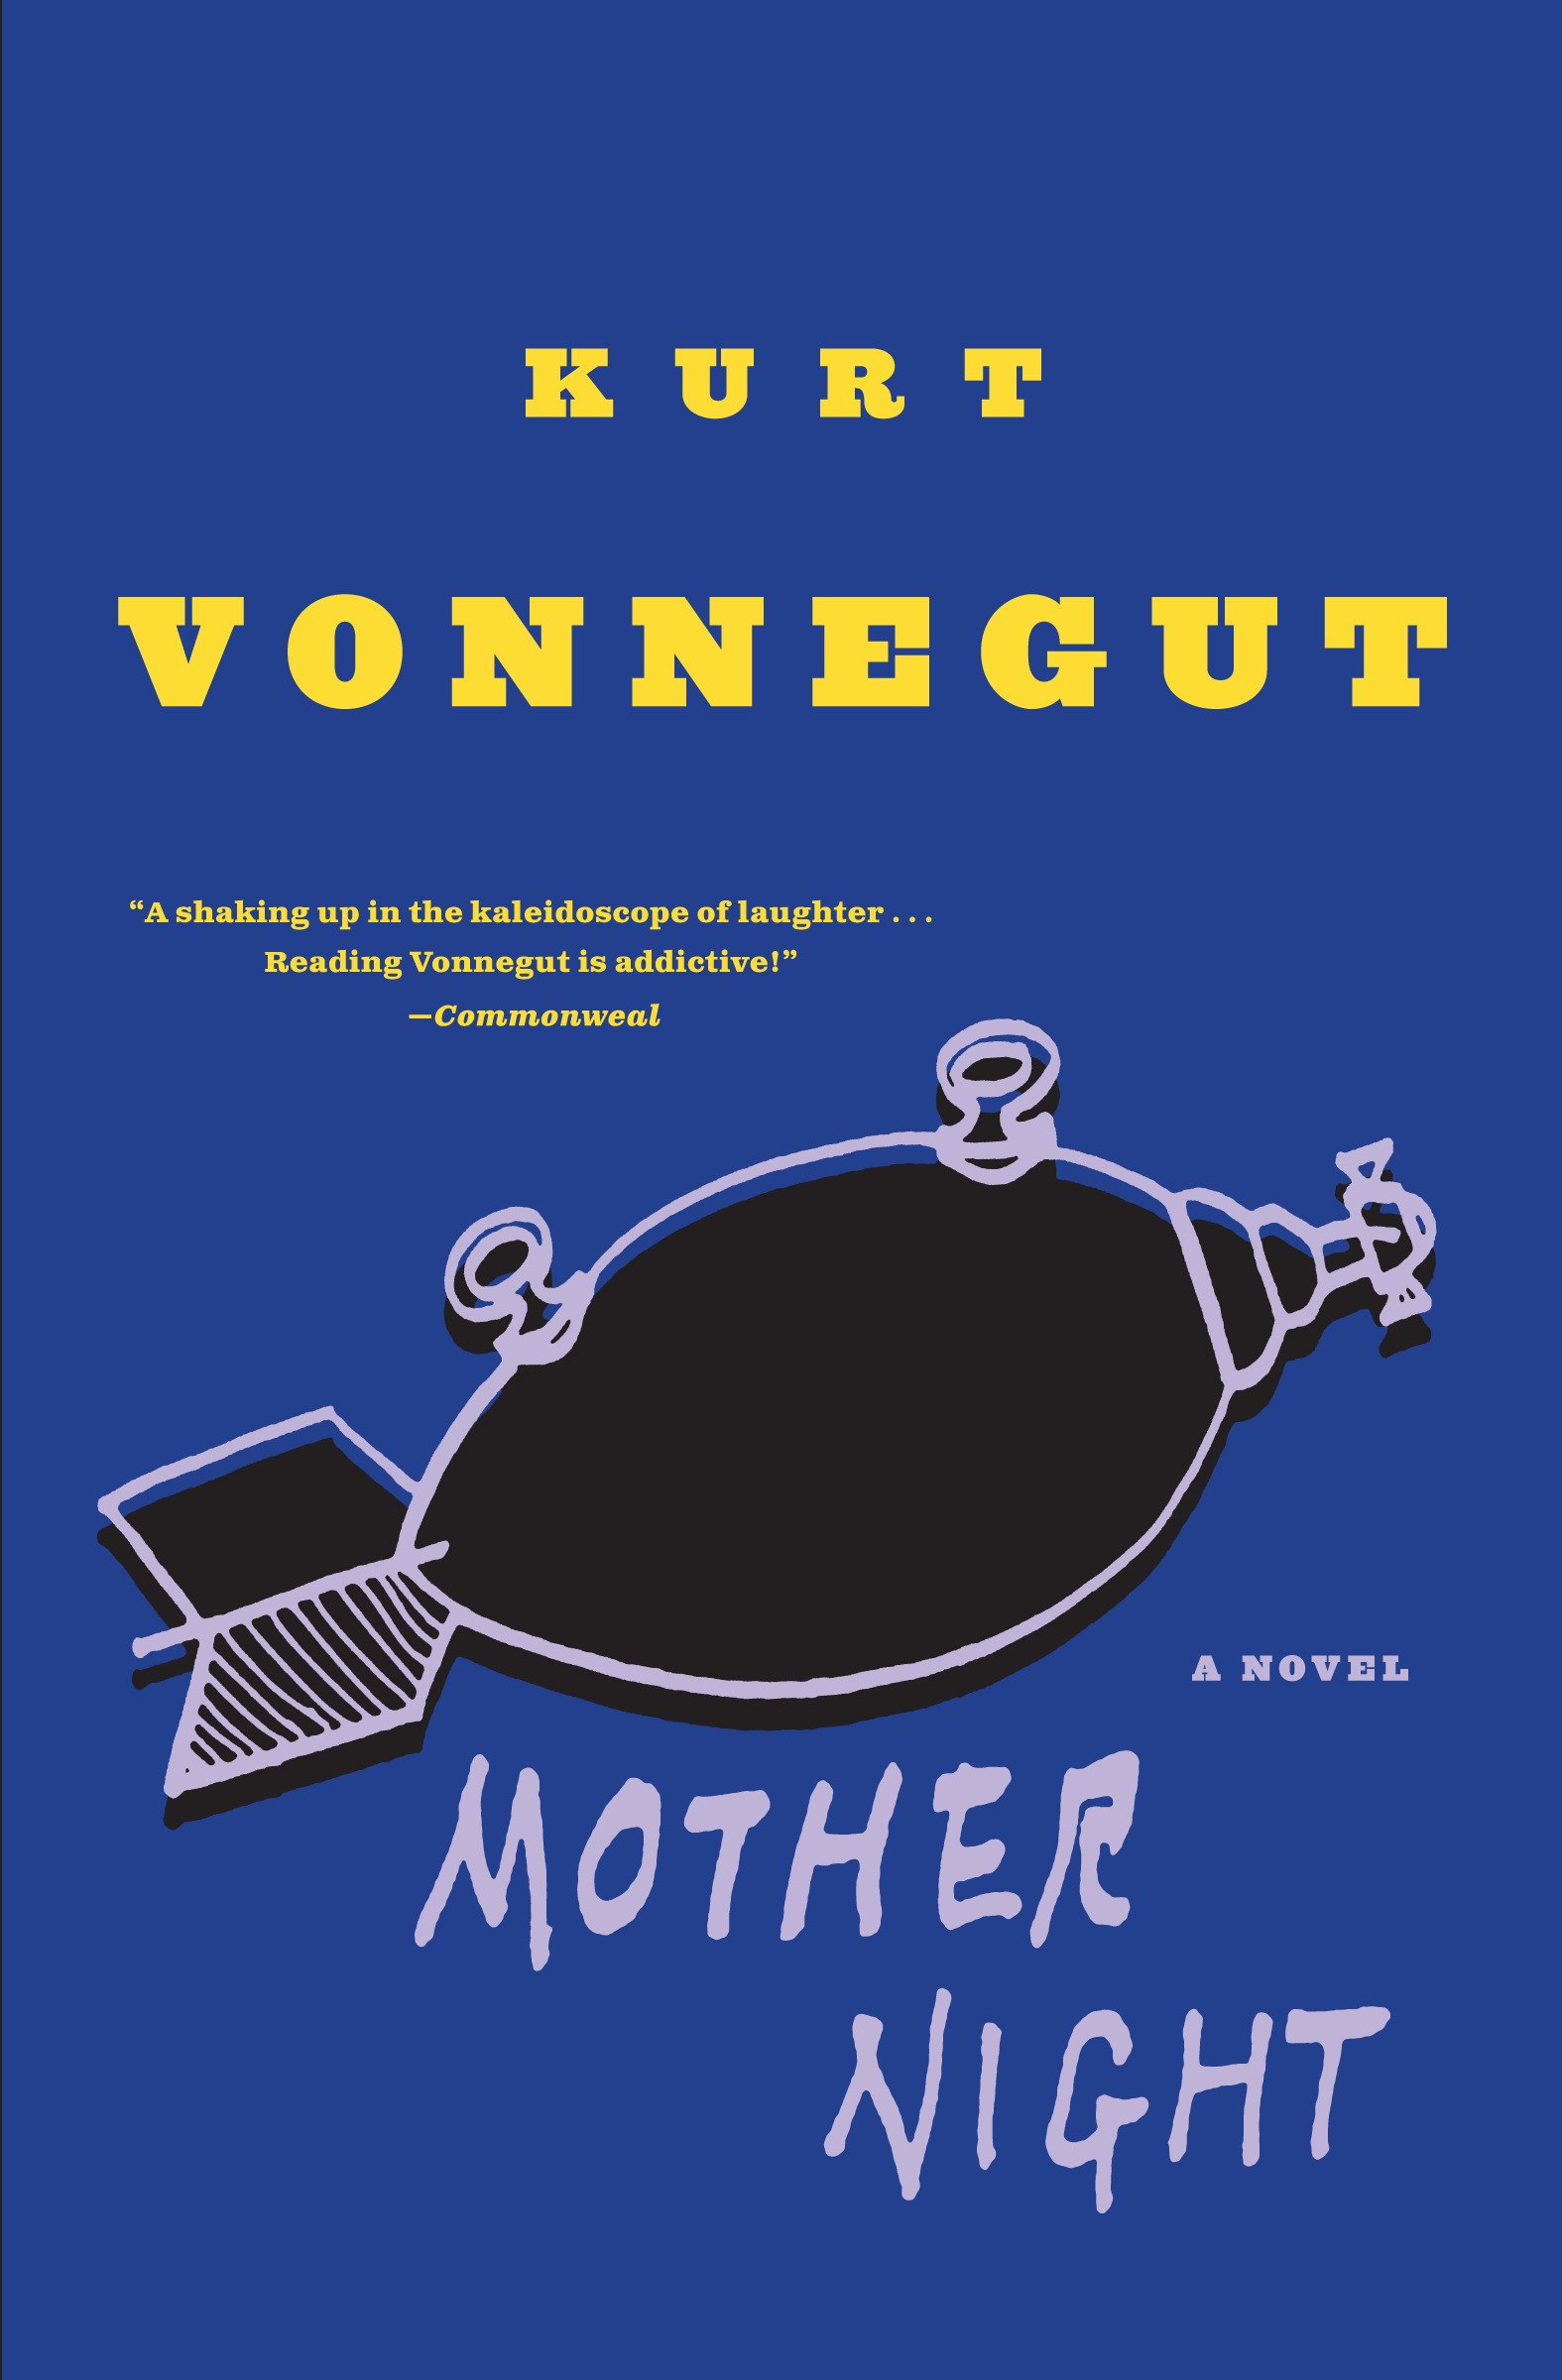 Mother Night: A Novel (eBook) by Kurt Vonnegut $2.99